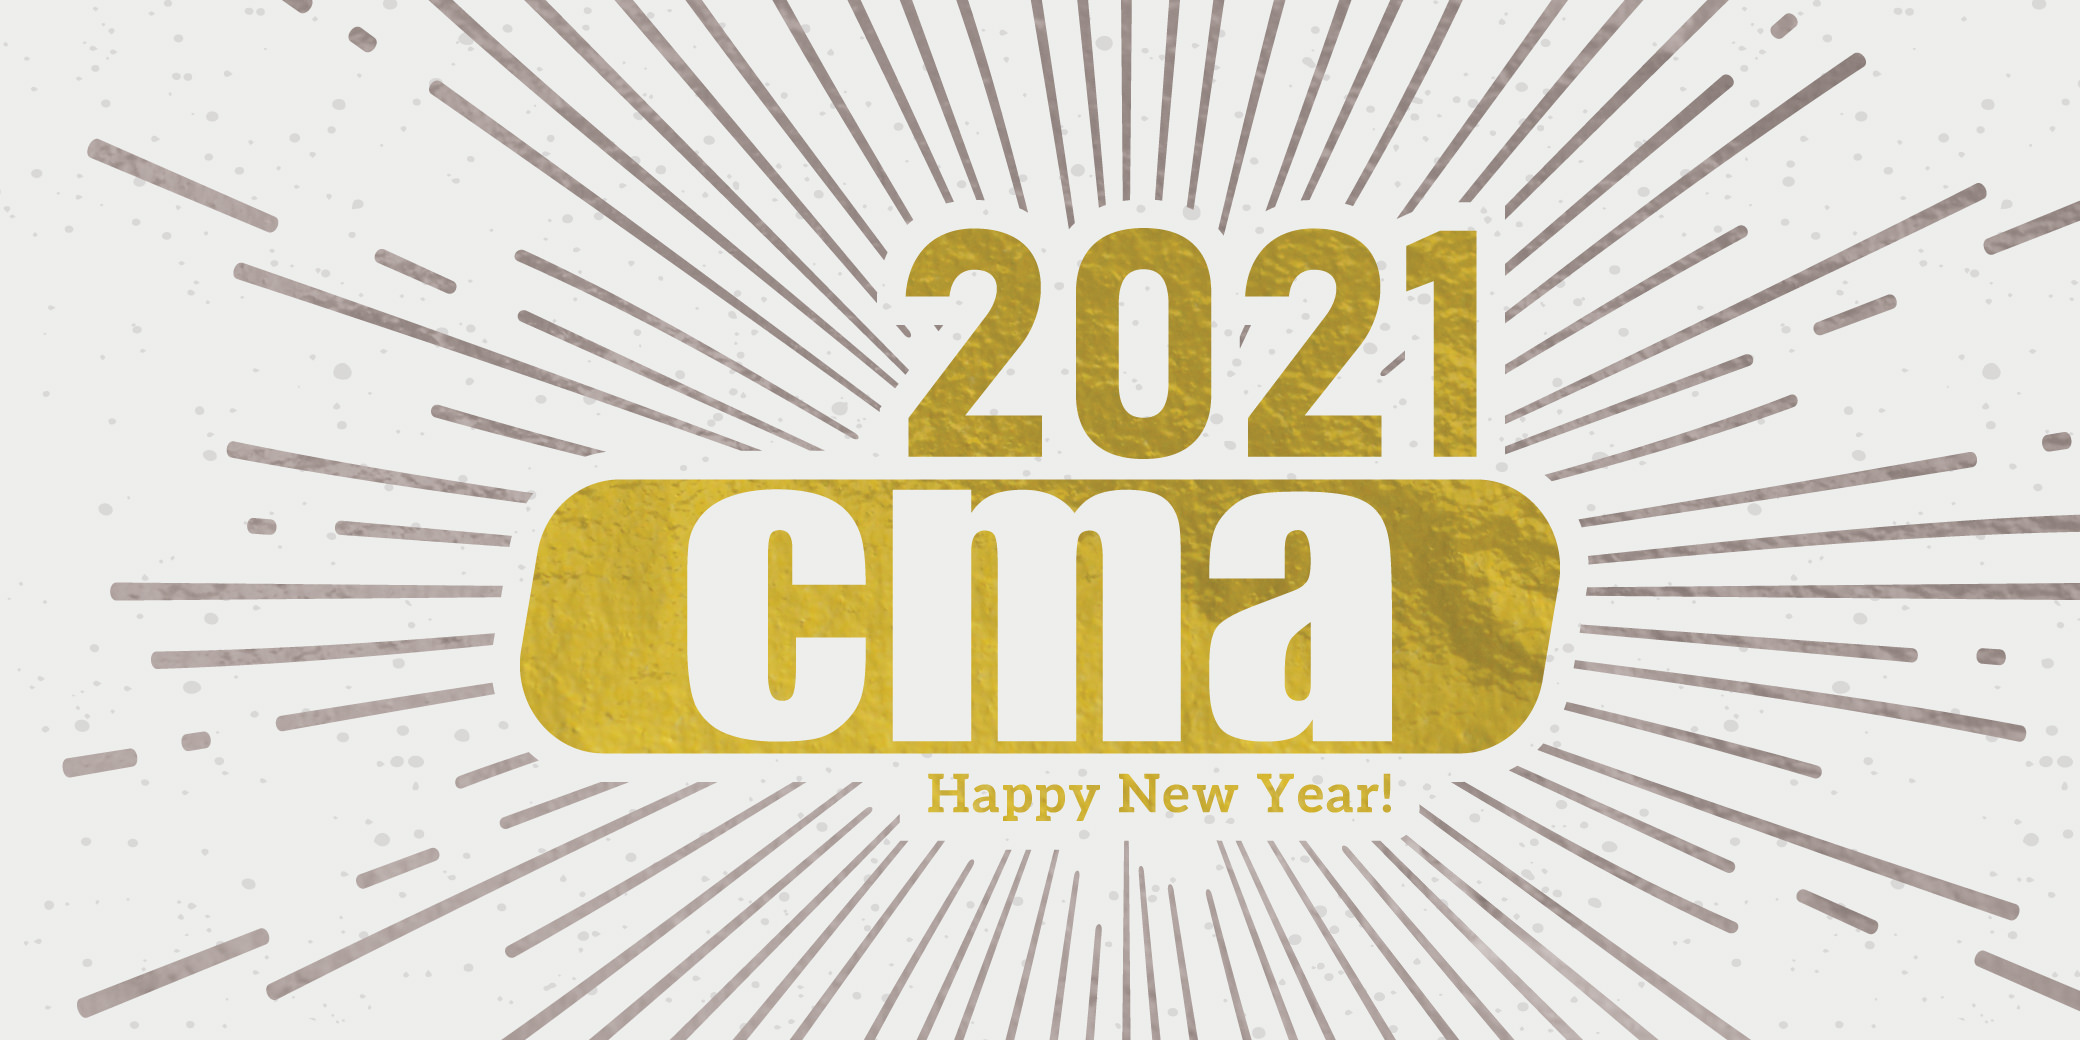 Happy New Year From CMA!